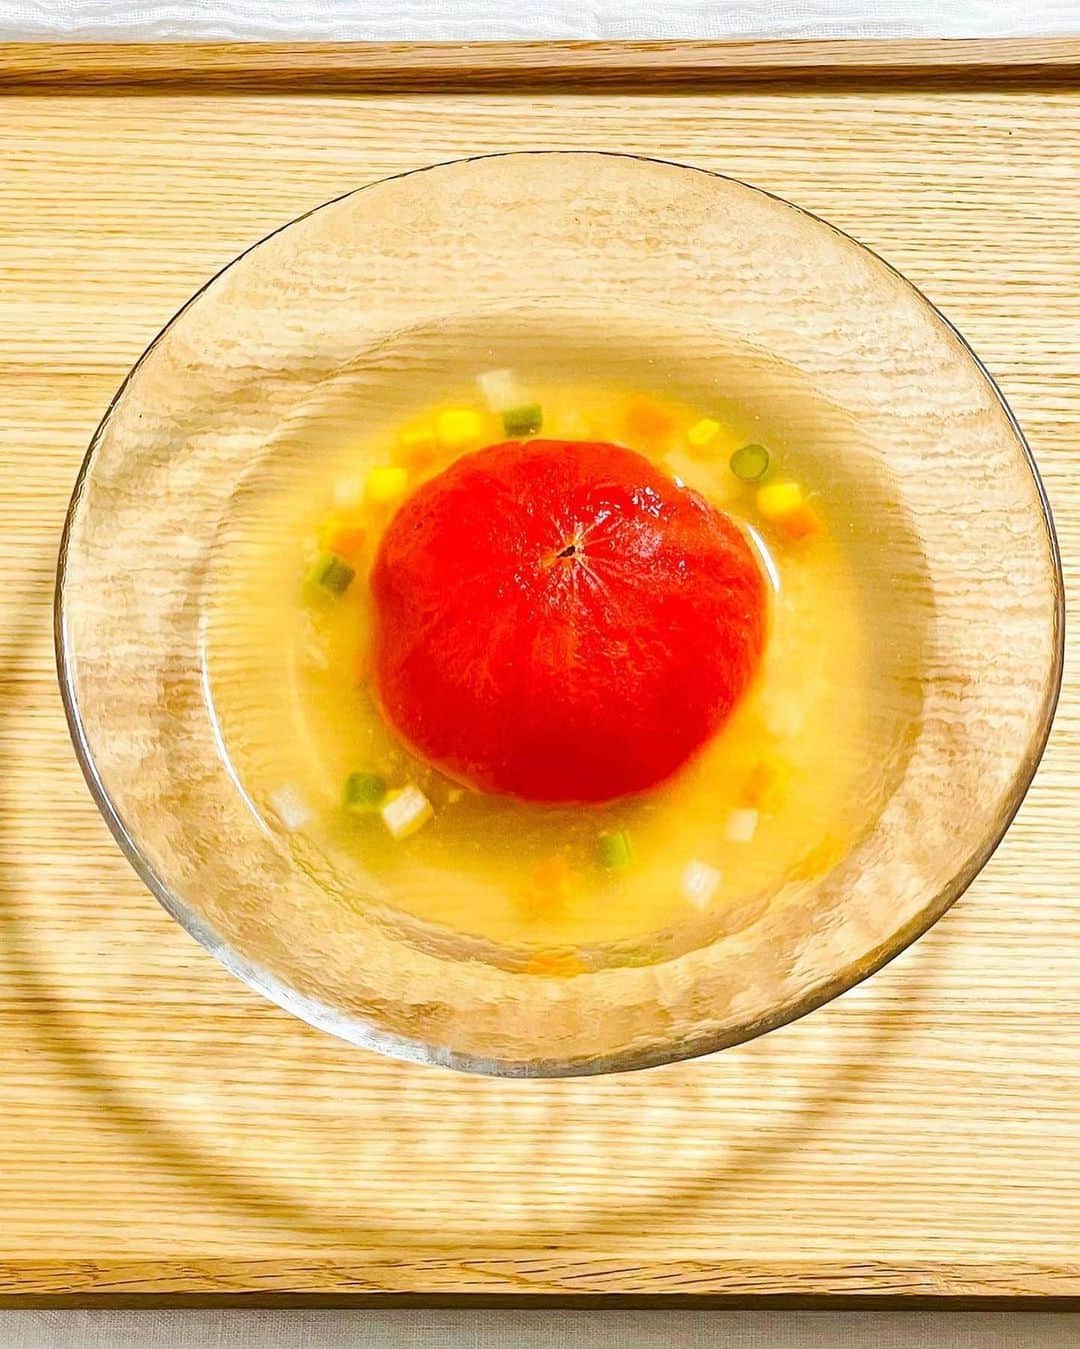 にんべん　おだしでキレイ習慣さんのインスタグラム写真 - (にんべん　おだしでキレイ習慣Instagram)「トマトの肉詰め🐟✨🍅⁉️ 季節によってこんなに#トマト のおいしさって違うんだっと日々感じております✨ あとやはり…価格が落ちるのが嬉しい🥹💕  今日も#にんべんだしアンバサダー さんの#おだしで夏飯 を紹介🐟🎵✨  @hi.romi.ta605 さん、ありがとうございます🐟💕 こんなに素敵なお料理が、とにかく簡単なのにびっくりしました‼︎‼︎🐟🍅✨冷製でもおいしい予感…‼︎‼︎  おいしいヒントがあったら、ぜひぜひアンバサダーさん同士もフォローし合ってみてくださいね☺️  ・ ・ ・  𓂃✺まるごとトマト #おだしで夏飯 ✺𓂃 ⁡ 夏野菜の代表🍅トマトまるごと味わっちゃいましょう❣️ #簡単レシピあり ⁡ 毎年　夏になると作る簡単料理😊 夏バテ気味だな～って思うときにちょうどいい感じですよ🍅　(トマト苦手じゃなければ) ⁡ 煮たトマトは酸味が抜けてまろやかで 鶏ひき肉と豆腐がお出汁を吸ってフワフワ食感 ⁡ 心がほんわか和らぐ、トマトとお出汁を味わうひとさらです☺️ ⁡ だしスープには、 🟡トウモロコシ 🟠にんじん 🟢インゲン豆 ⚪️玉ねぎ も散らして、彩りも加えてみました ⁡ ⁡ ꙳꙳꙳˙˙˙꙳꙳꙳˙˙˙꙳꙳꙳˙˙˙꙳꙳꙳ ⁡ ˗˗˗˗˗˗˗˗˗˗˗˗˗˗˗˗˗˗˗˗˗˗˗˗˗˗˗˗˗˗˗˗˗˗˗˗˗˗˗˗˗˗˗˗˗˗˗˗˗˗˗˗˗˗˗˗ まるごとトマトの出汁スープ ˗˗˗˗˗˗˗˗˗˗˗˗˗˗˗˗˗˗˗˗˗˗˗˗˗˗˗˗˗˗˗˗˗˗˗˗˗˗˗˗˗˗˗˗˗˗˗˗˗˗˗˗˗˗˗˗˗ 【材料】 トマト…２個 鶏ひき肉…100g 豆腐（水切りする）…100g 玉ねぎ（みじん切り）…30g 塩こしょう...少々 ⁡ ◆鶏がらかつおポーションだし...１個 ◆水...200ml～300ml 　※トマトの大きさや、味の好みで濃さは調整してください。 ⁡ 塩...小さじ 1／2～1／4 ⁡ ⁡ 【作り方】 1⃣豆腐は水切りしておく。 　玉ねぎはみじん切りにしておく。 ⁡ 2⃣トマトはヘタの部分を切り落とし 　中身をスプーンでくり抜く。 ⁡ 3⃣鶏ひき肉、豆腐、玉ねぎ、塩コショウを 　よく混ぜ合わせ、トマトの中に詰める。 ⁡ 4⃣鶏ひき肉側を下にして、鍋にトマトをいれる。 ⁡ 5⃣◆を入れて、弱火で20分ほど煮ると 　トマトの皮が自然とはがれてくるので、すべて取り除く。 ⁡ 6⃣最後に塩で味を調えて 　出来上がり ⁡ ⁡ ꙳꙳꙳˙˙˙꙳꙳꙳˙˙˙꙳꙳꙳˙˙˙꙳꙳꙳ ⁡ ⁡ 今日も見ていただきありがとうございます😊 皆さまの今日が素敵な一日になりますように💗 ⁡ 🌈𝙻𝙾𝚅𝙴 & 𝙿𝙴𝙰𝙲𝙴 & 𝚂𝙼𝙸𝙻𝙴 & 𝙹𝙾𝚈!!🌈 ⁡ ⁡ ⁡ #ぎゅーっとポーションだし #にんべんだしアンバサダー #だしのある生活 #にんべん#ある夜のおうちごはん  #夏野菜レシピ #旬の野菜を食べよう  #夏のお野菜 #夏バテレシピ  #元気になるレシピ #元気になるごはん #からだにいいごはん　#からだに優しいごはん  #楽しいおうちごはん #おうちごはんを楽しもう #オリーブノート #オリーブノートアンバサダー #フーディーテーブル #ネクストフーディスト」6月29日 10時30分 - ninben.dashiambassador